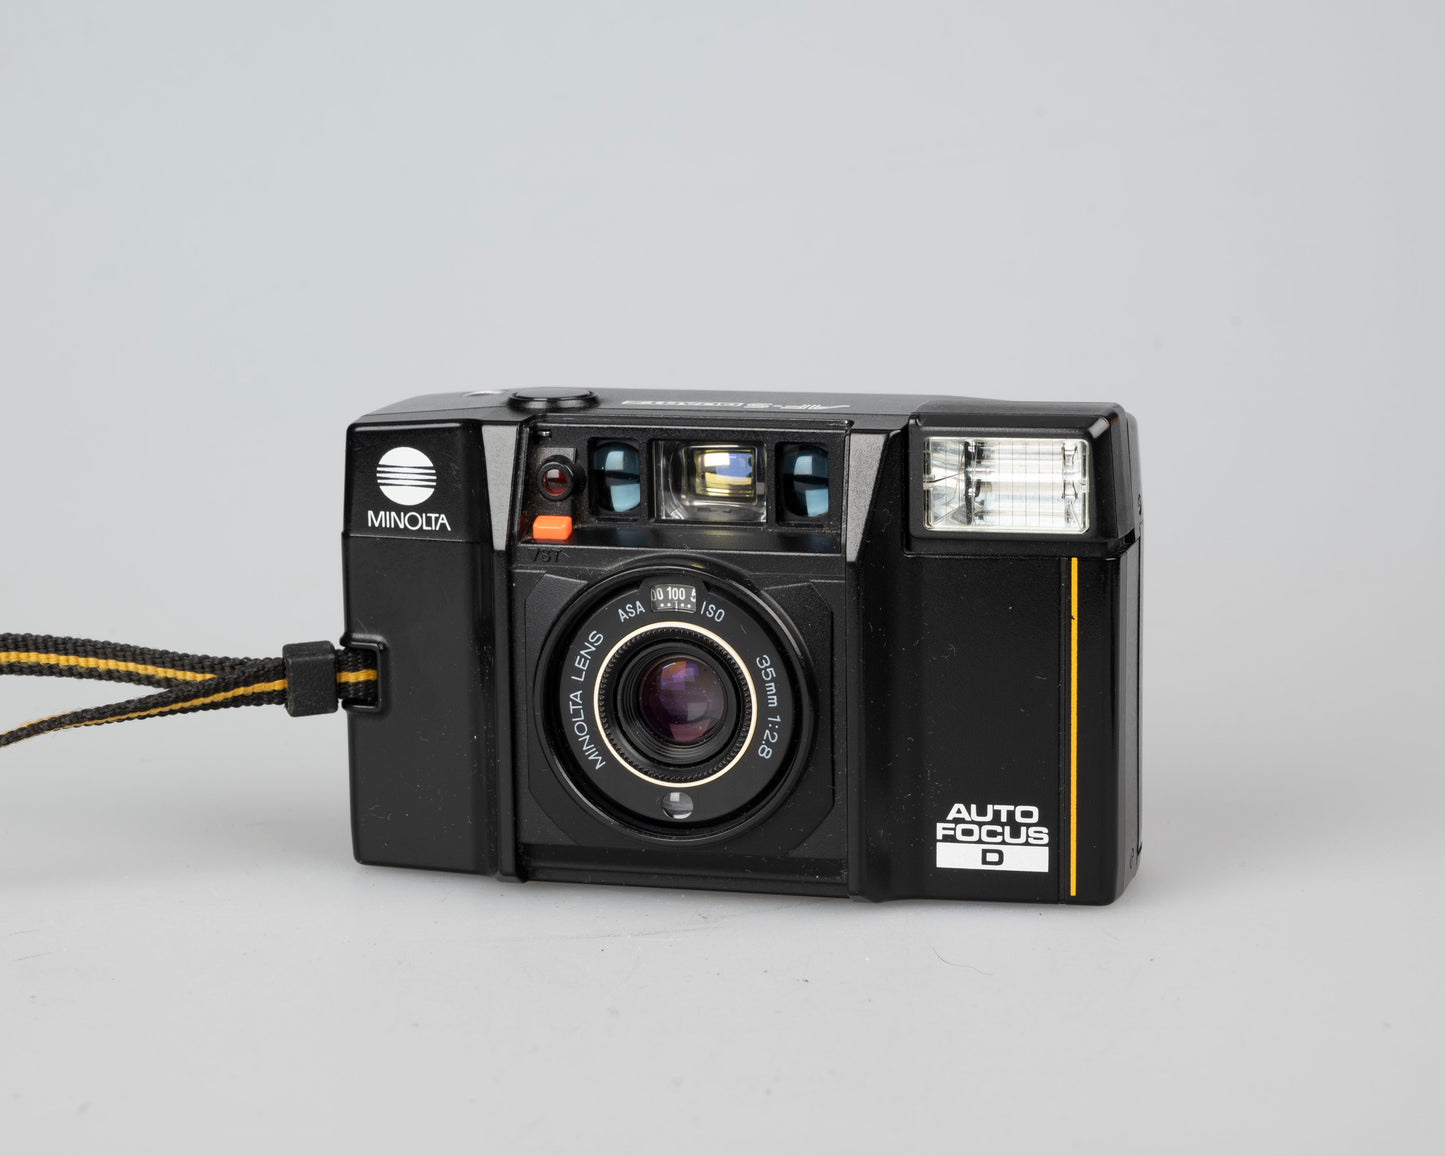 Minolta AF-S Quartz Auto Focus D " 35mm camera (serial 5004699)